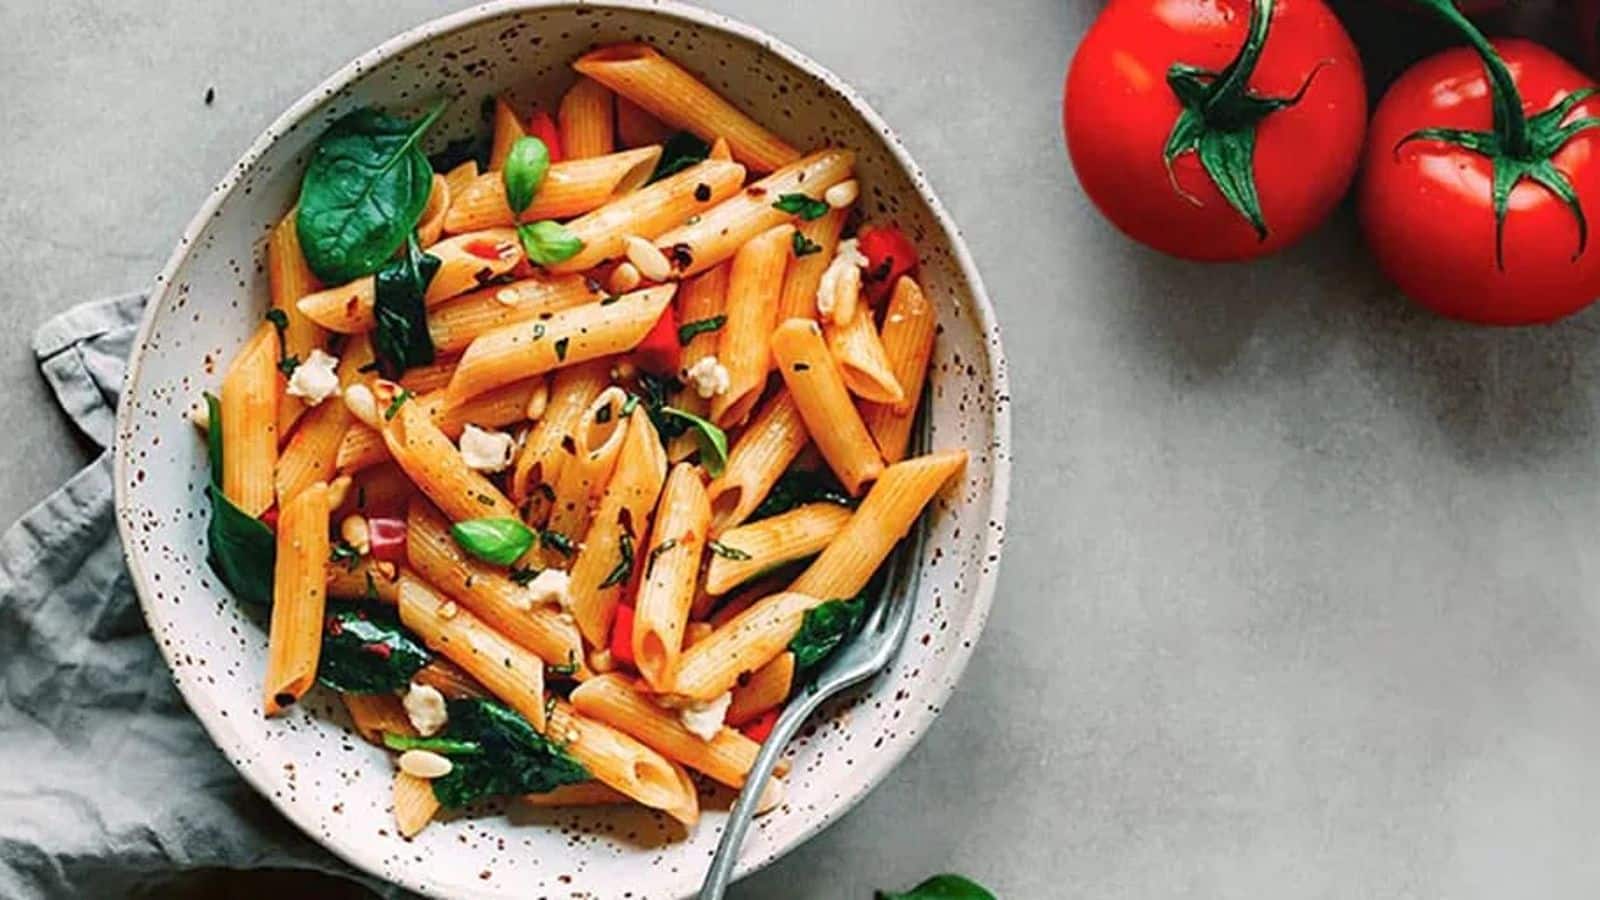 Recipe: Cook authentic Italian vegan gnocchi at home